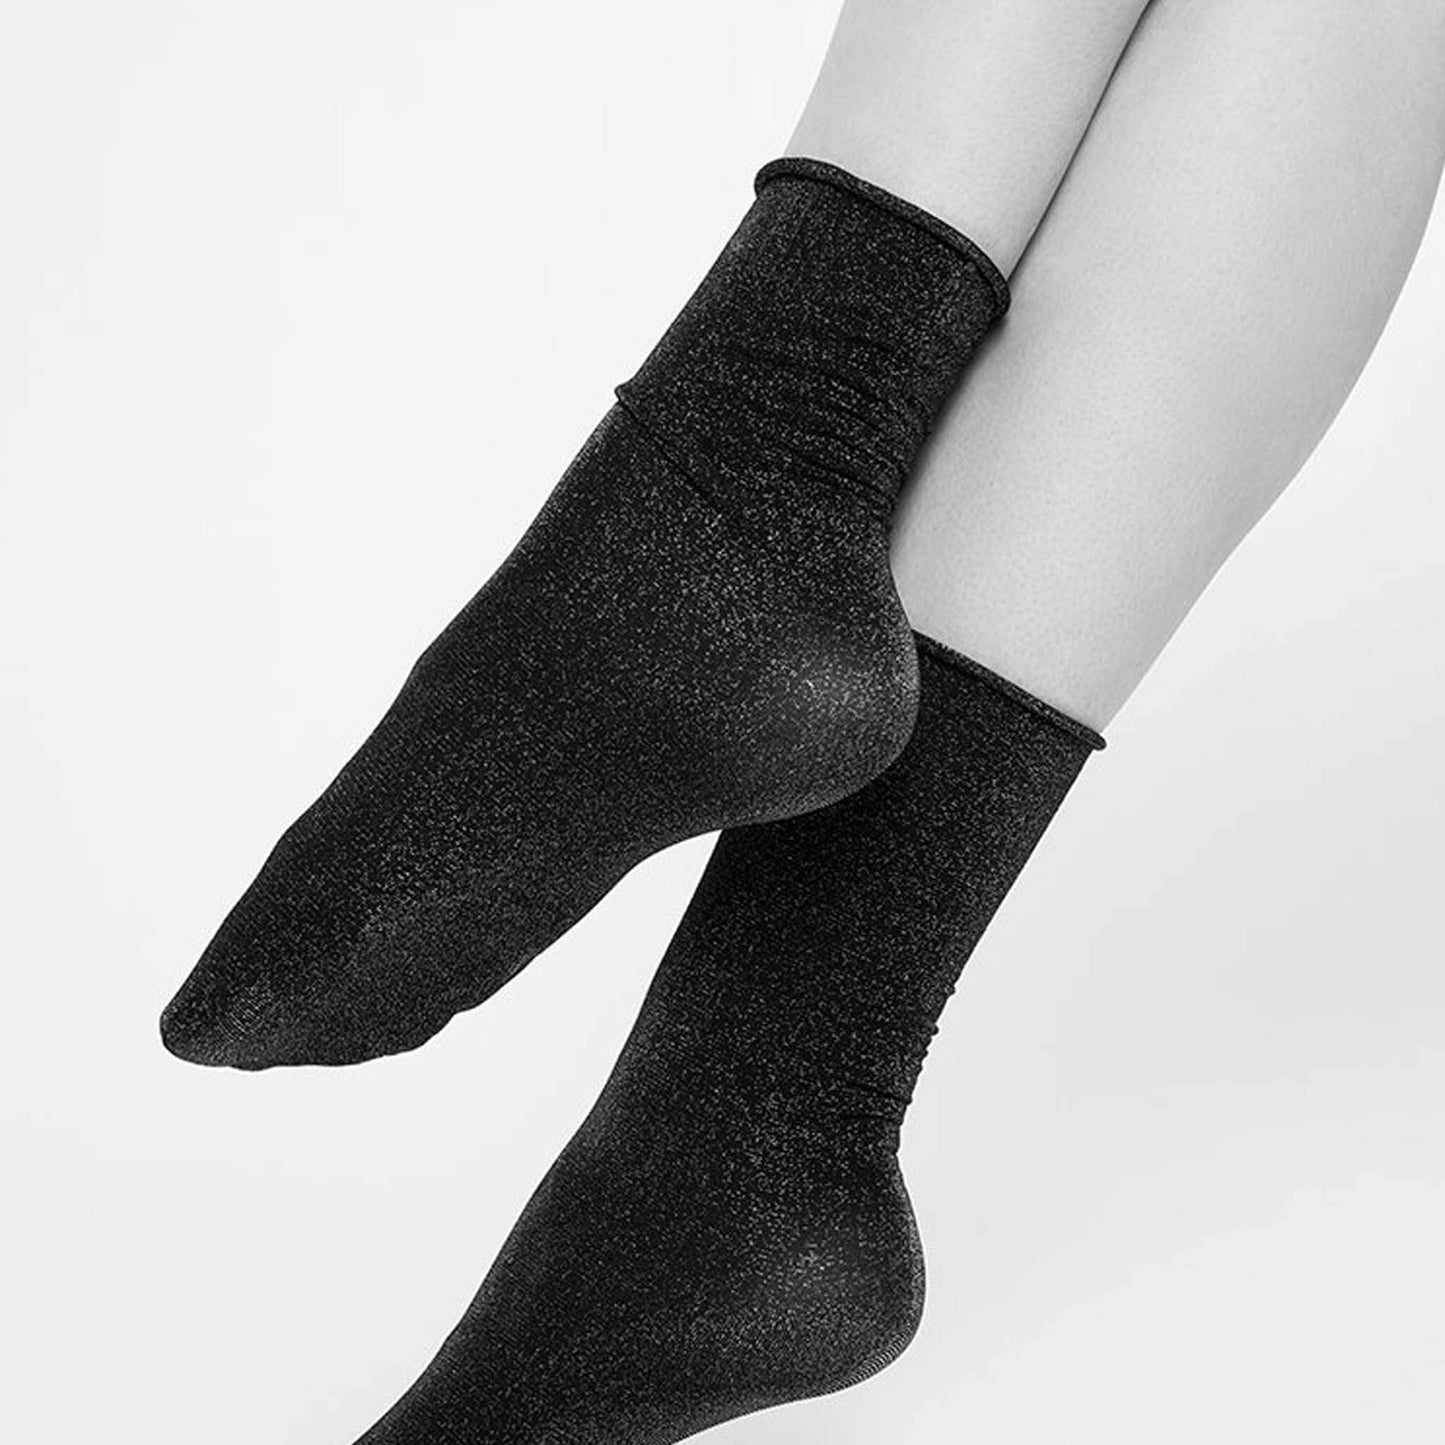 Shimmery Black Sheer Fashion Socks